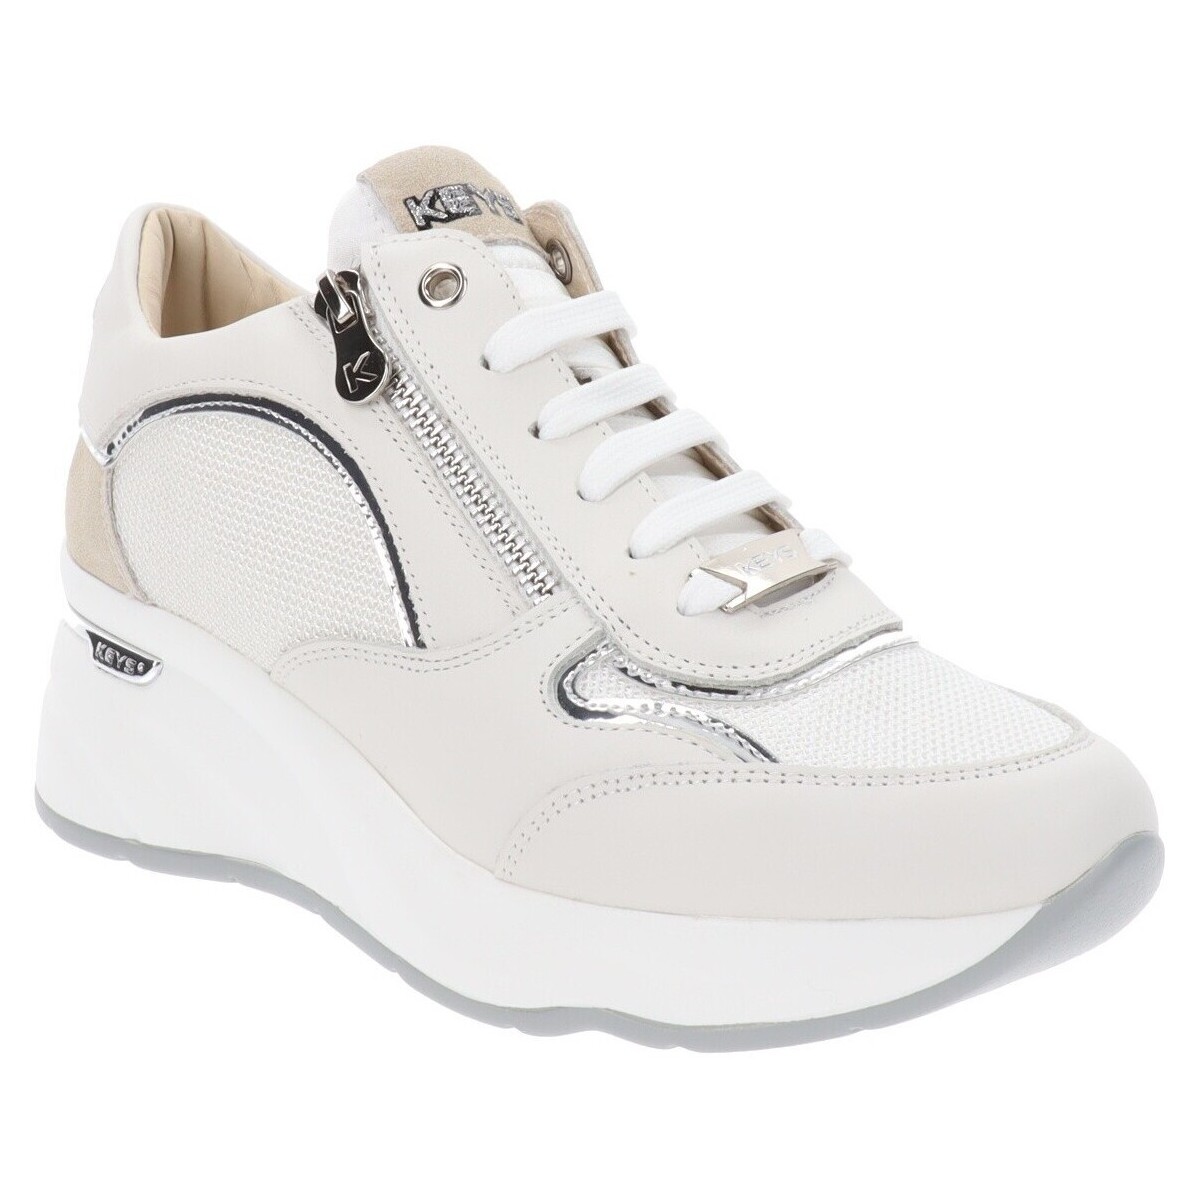 Παπούτσια Γυναίκα Sneakers Keys K-9041 Άσπρο